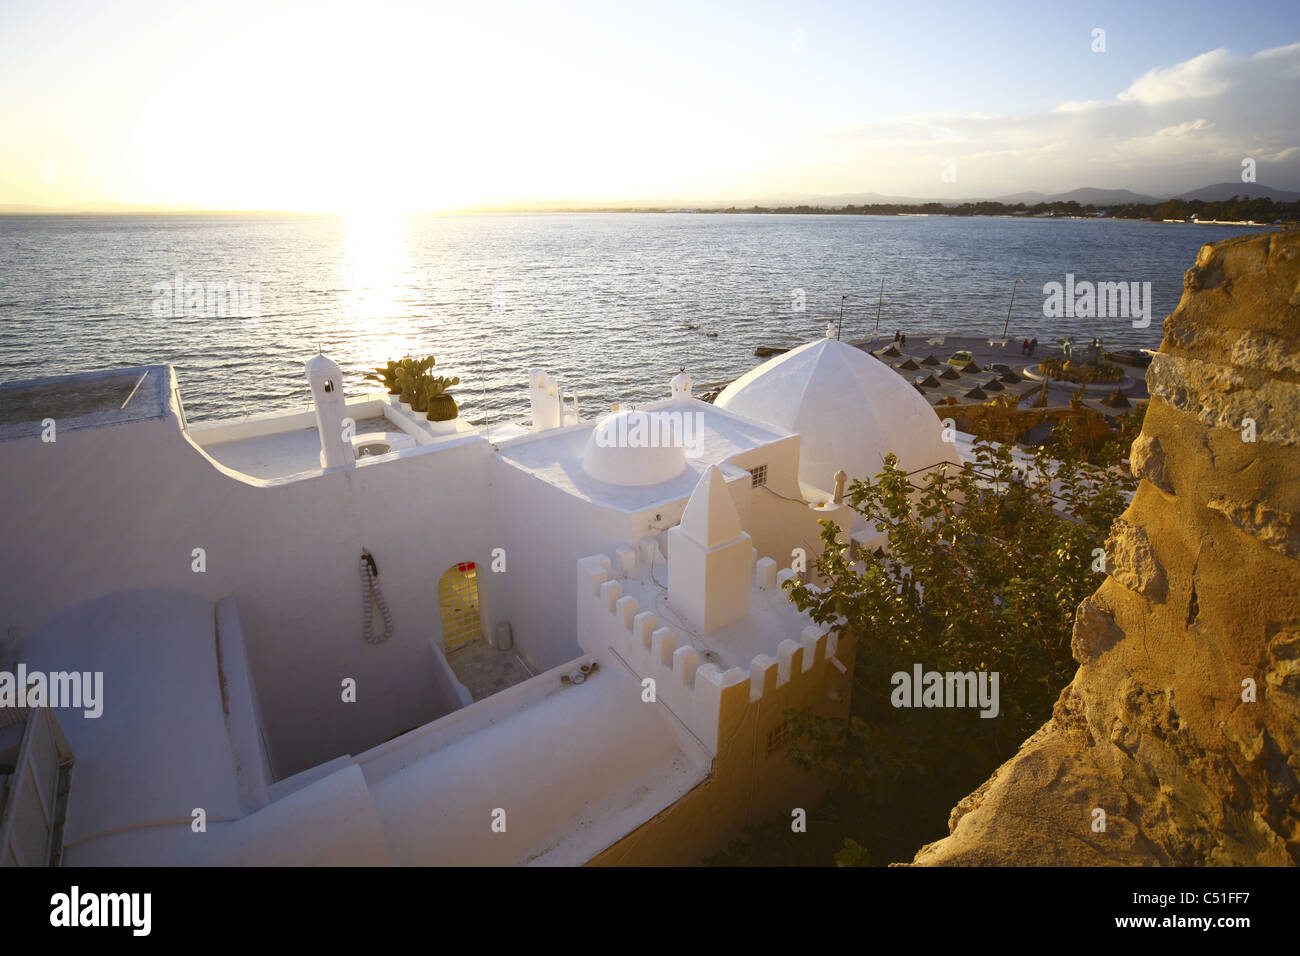 Africa, Tunisia, Mare mediterraneo, Hammamet, Medina, muro di fortificazione, Waterfront edifici Foto Stock